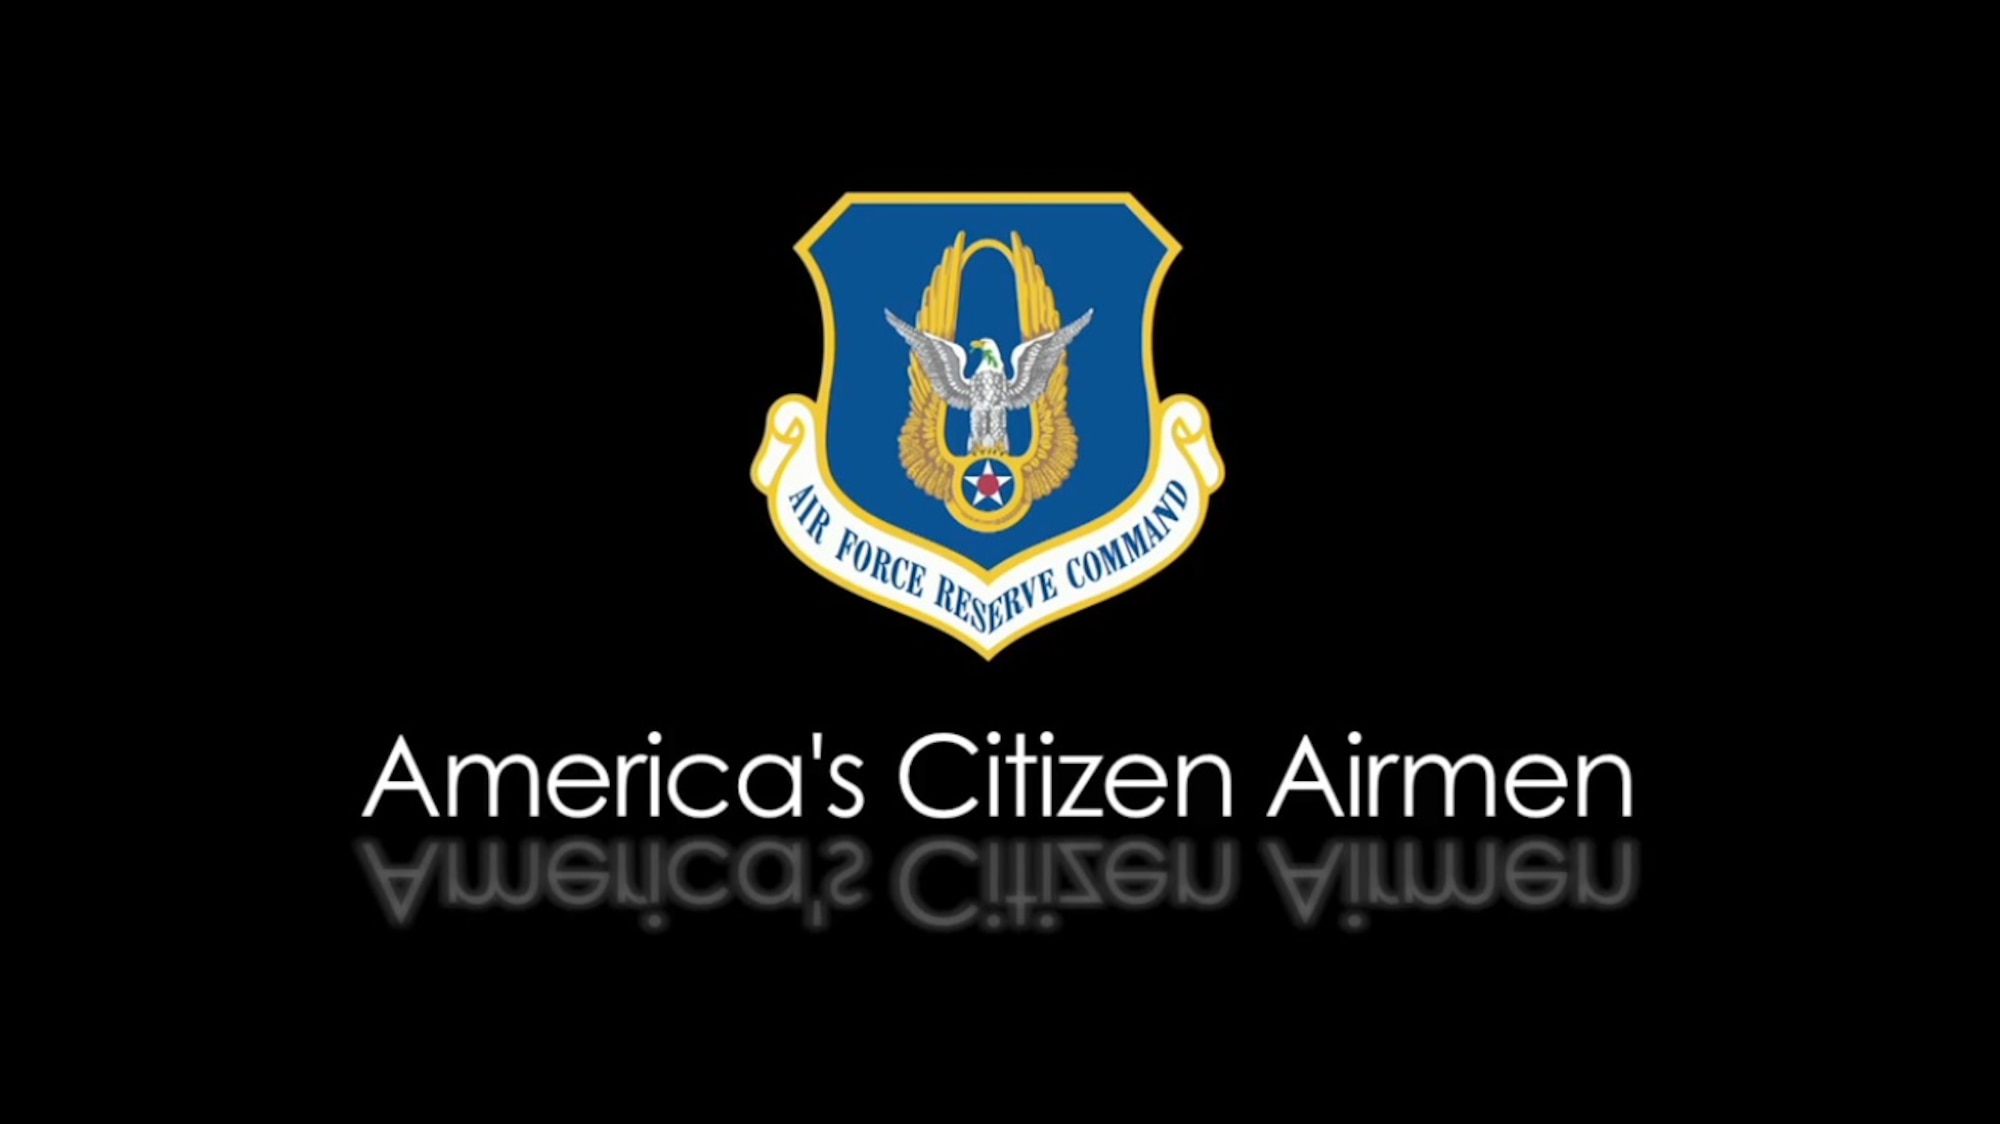 America's Citizen Airman video